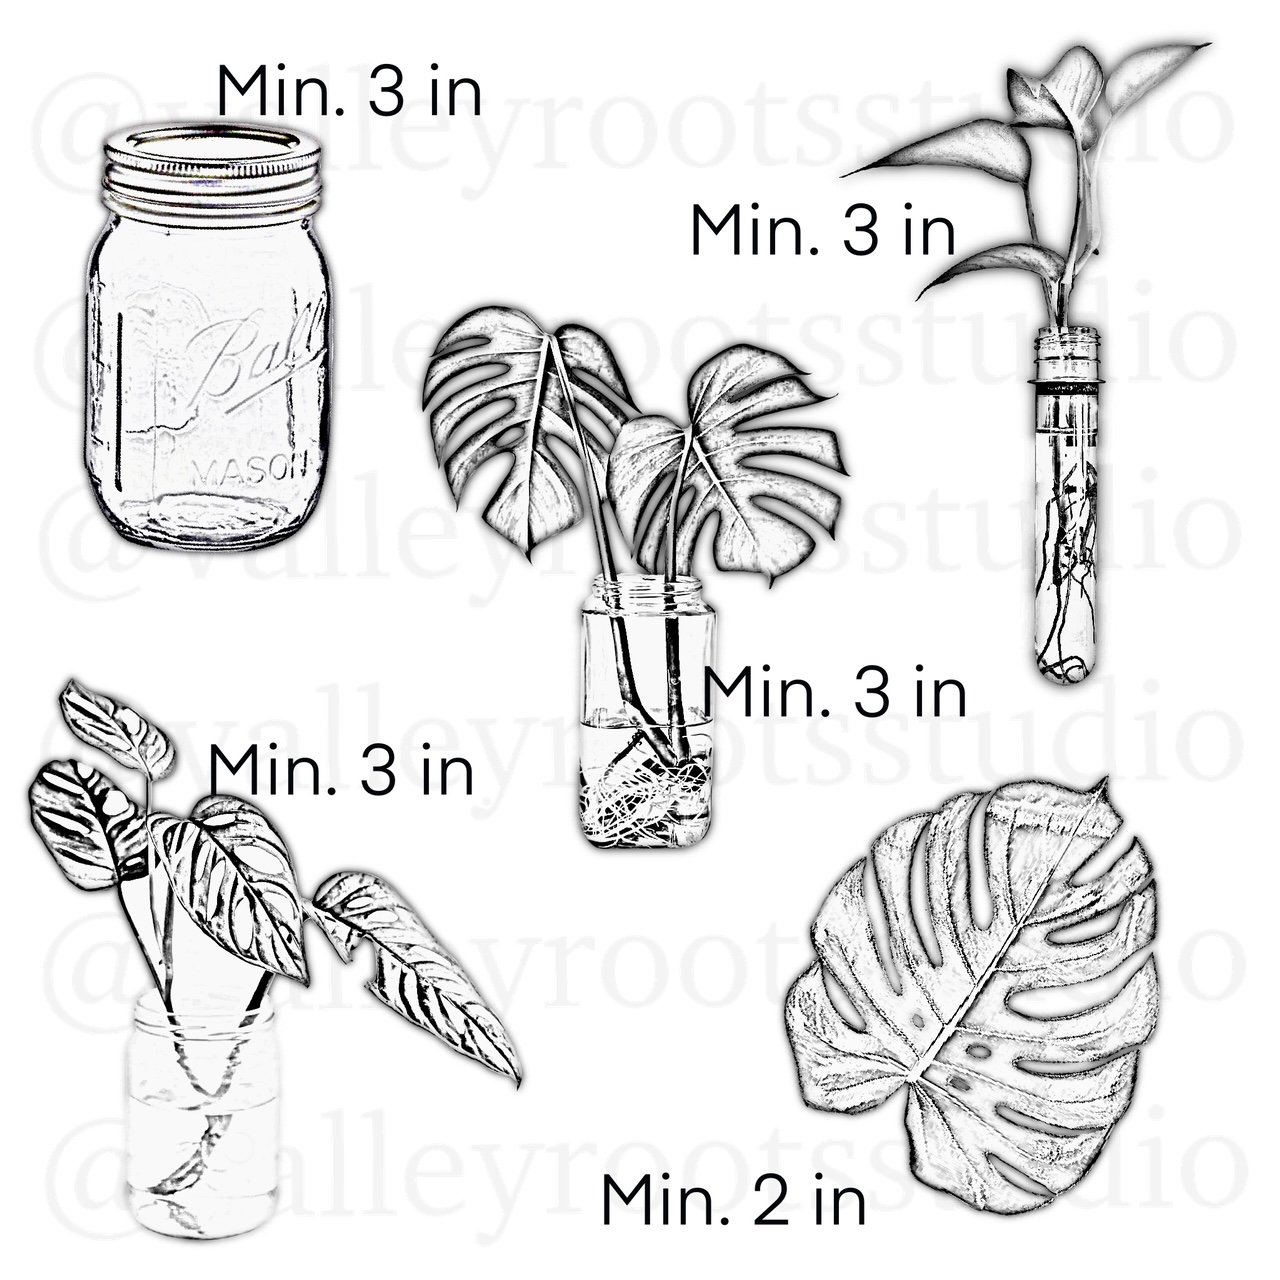 Micorealism: “Plants ‘N Jars”